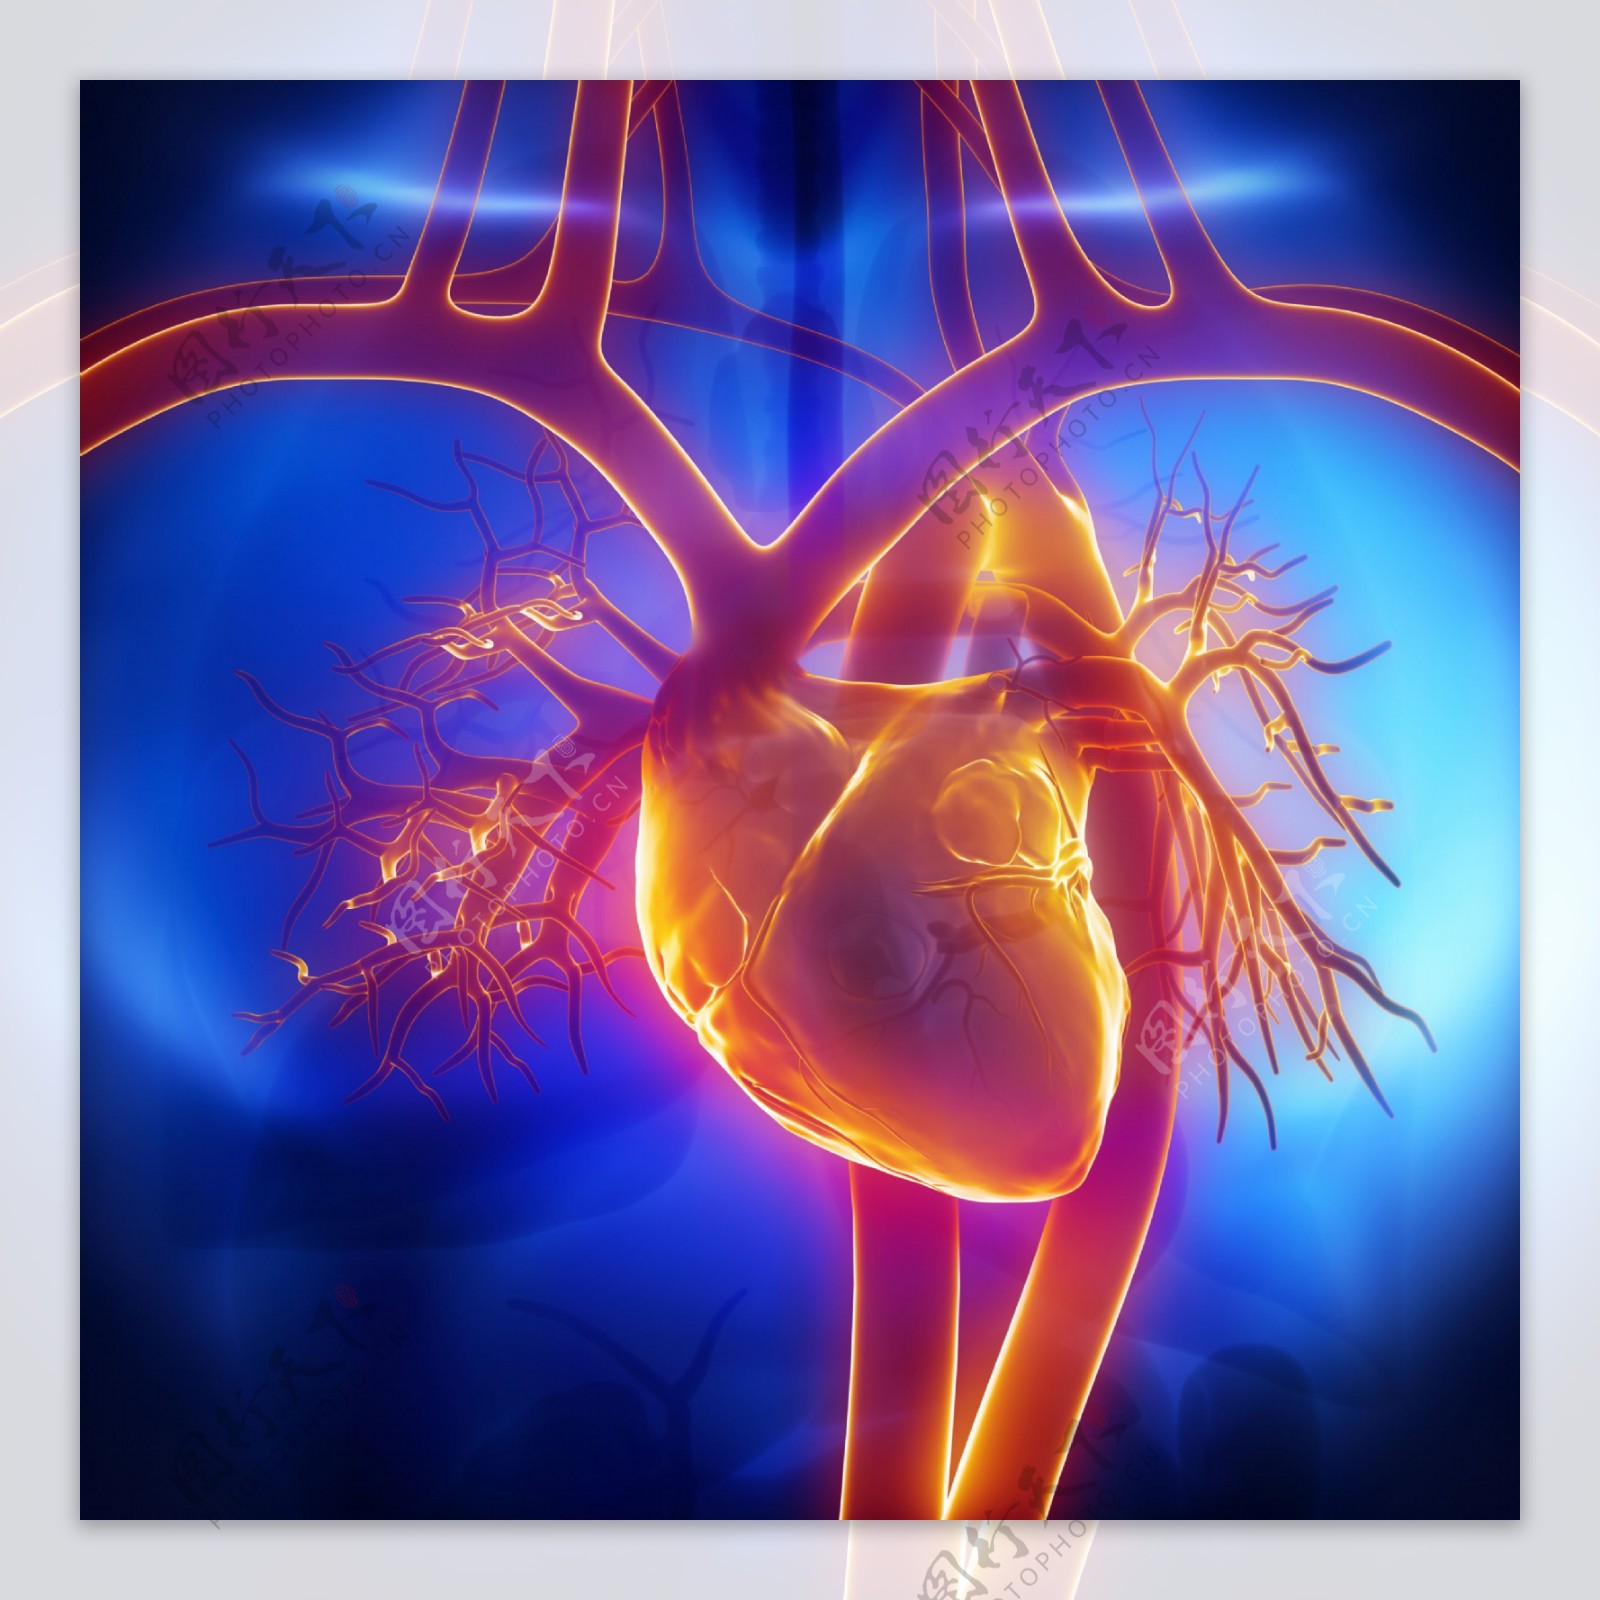 心脏血管器官图片